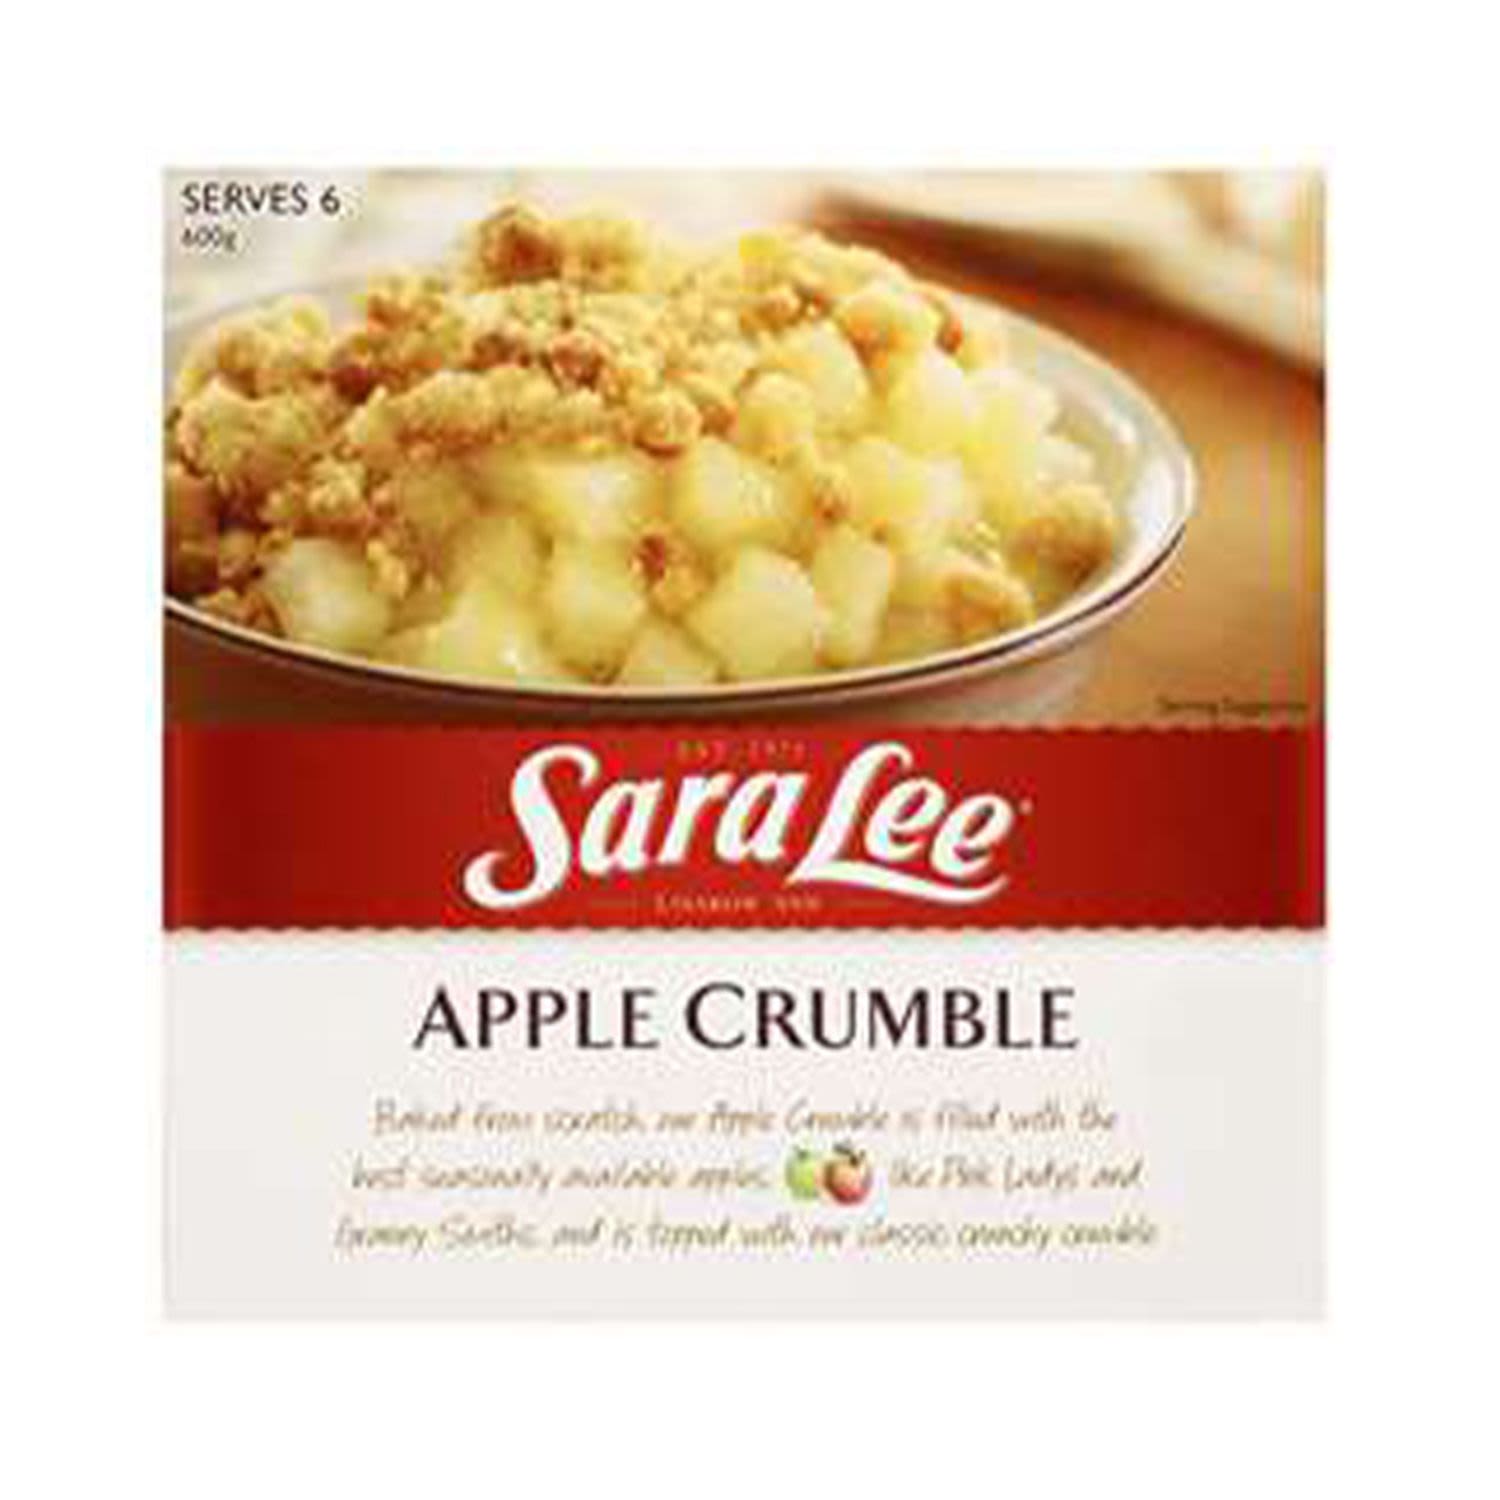 Sara Lee Apple Crumble , 600 Gram